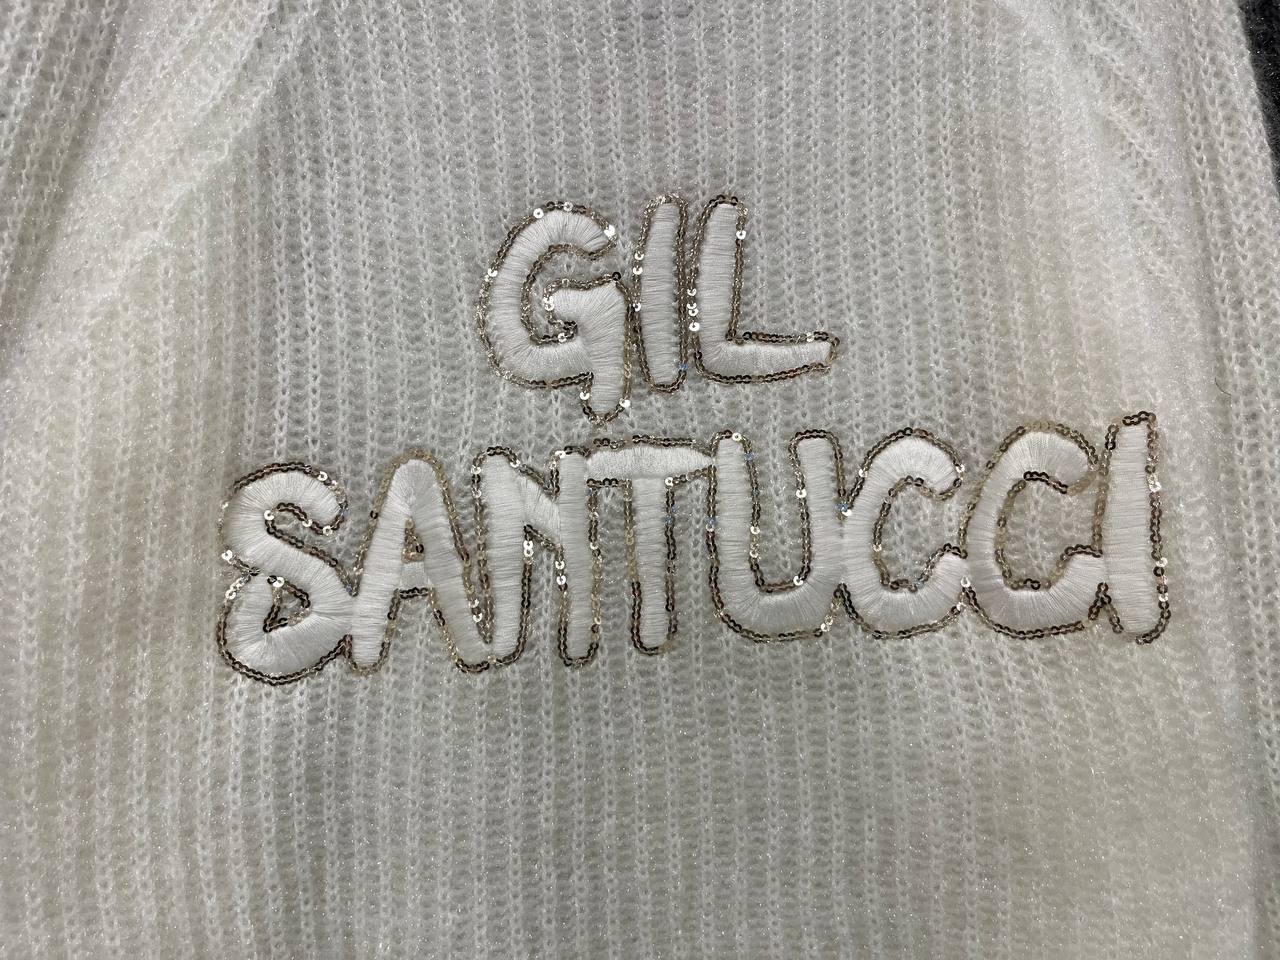 Итальянская одежда, бренд Gil Santucci, арт. 73107320